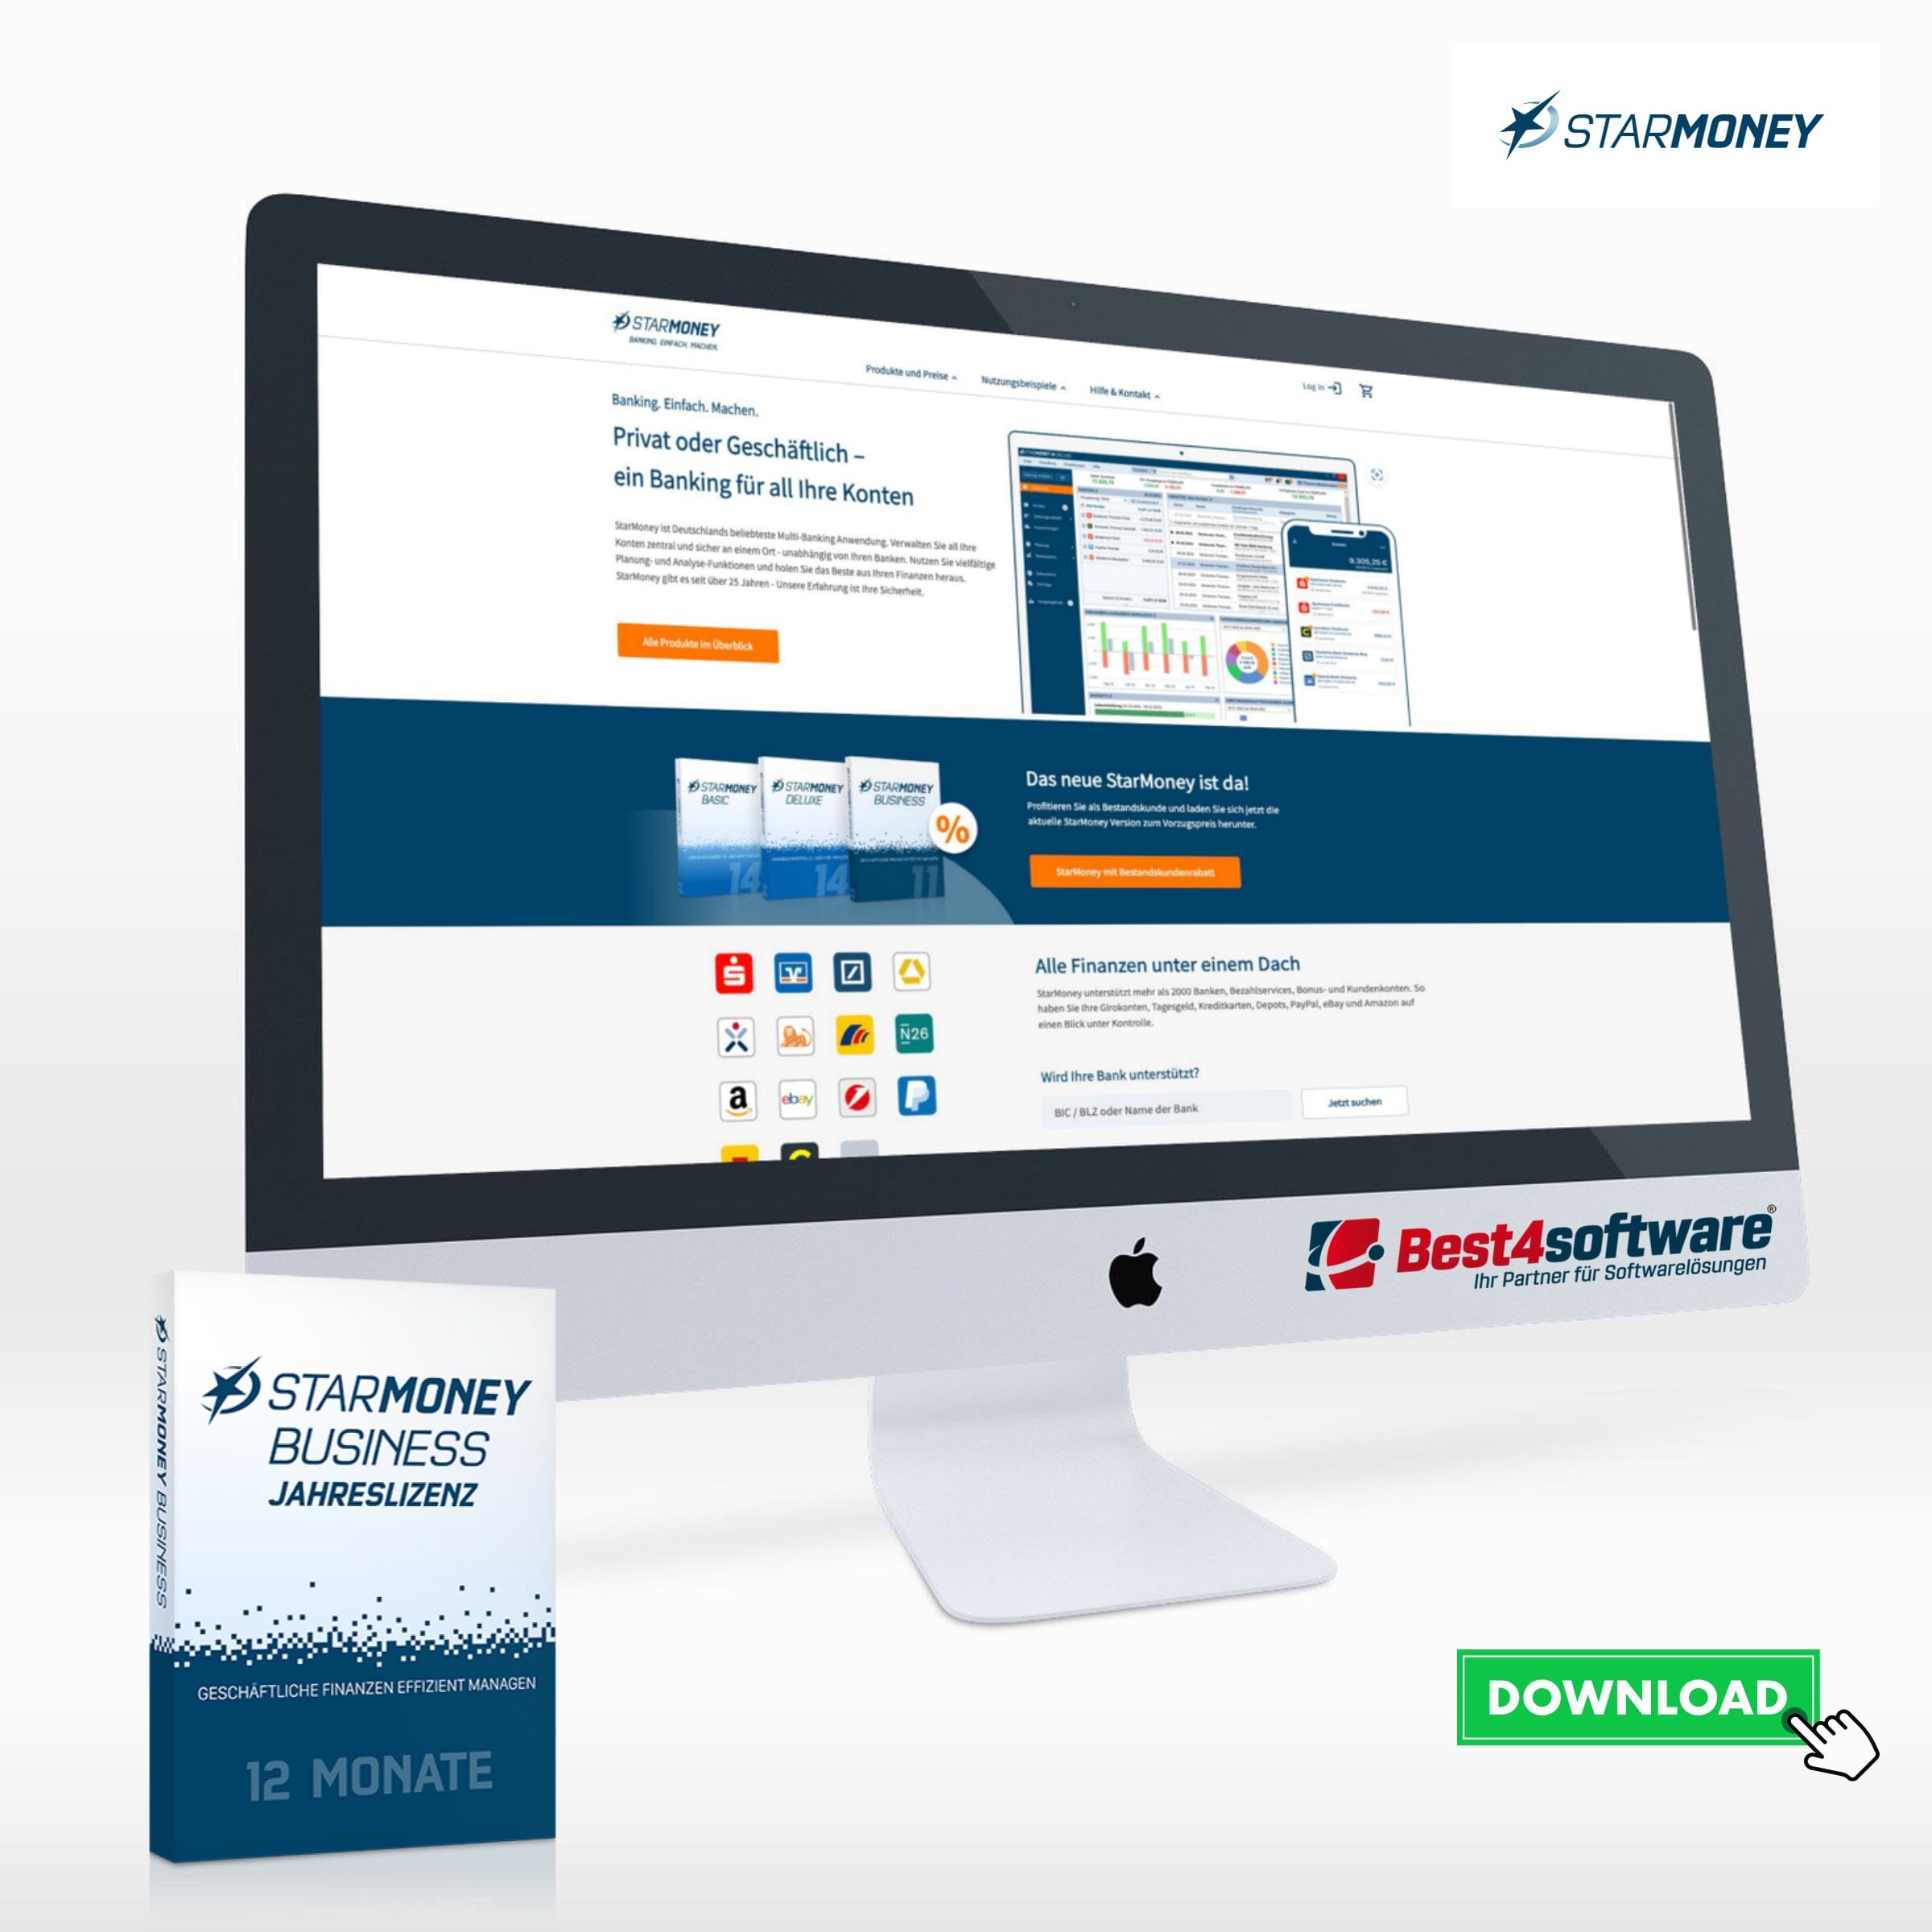 StarMoney Business: Ein umfassender Finanzmanager für Ihr Unternehmen